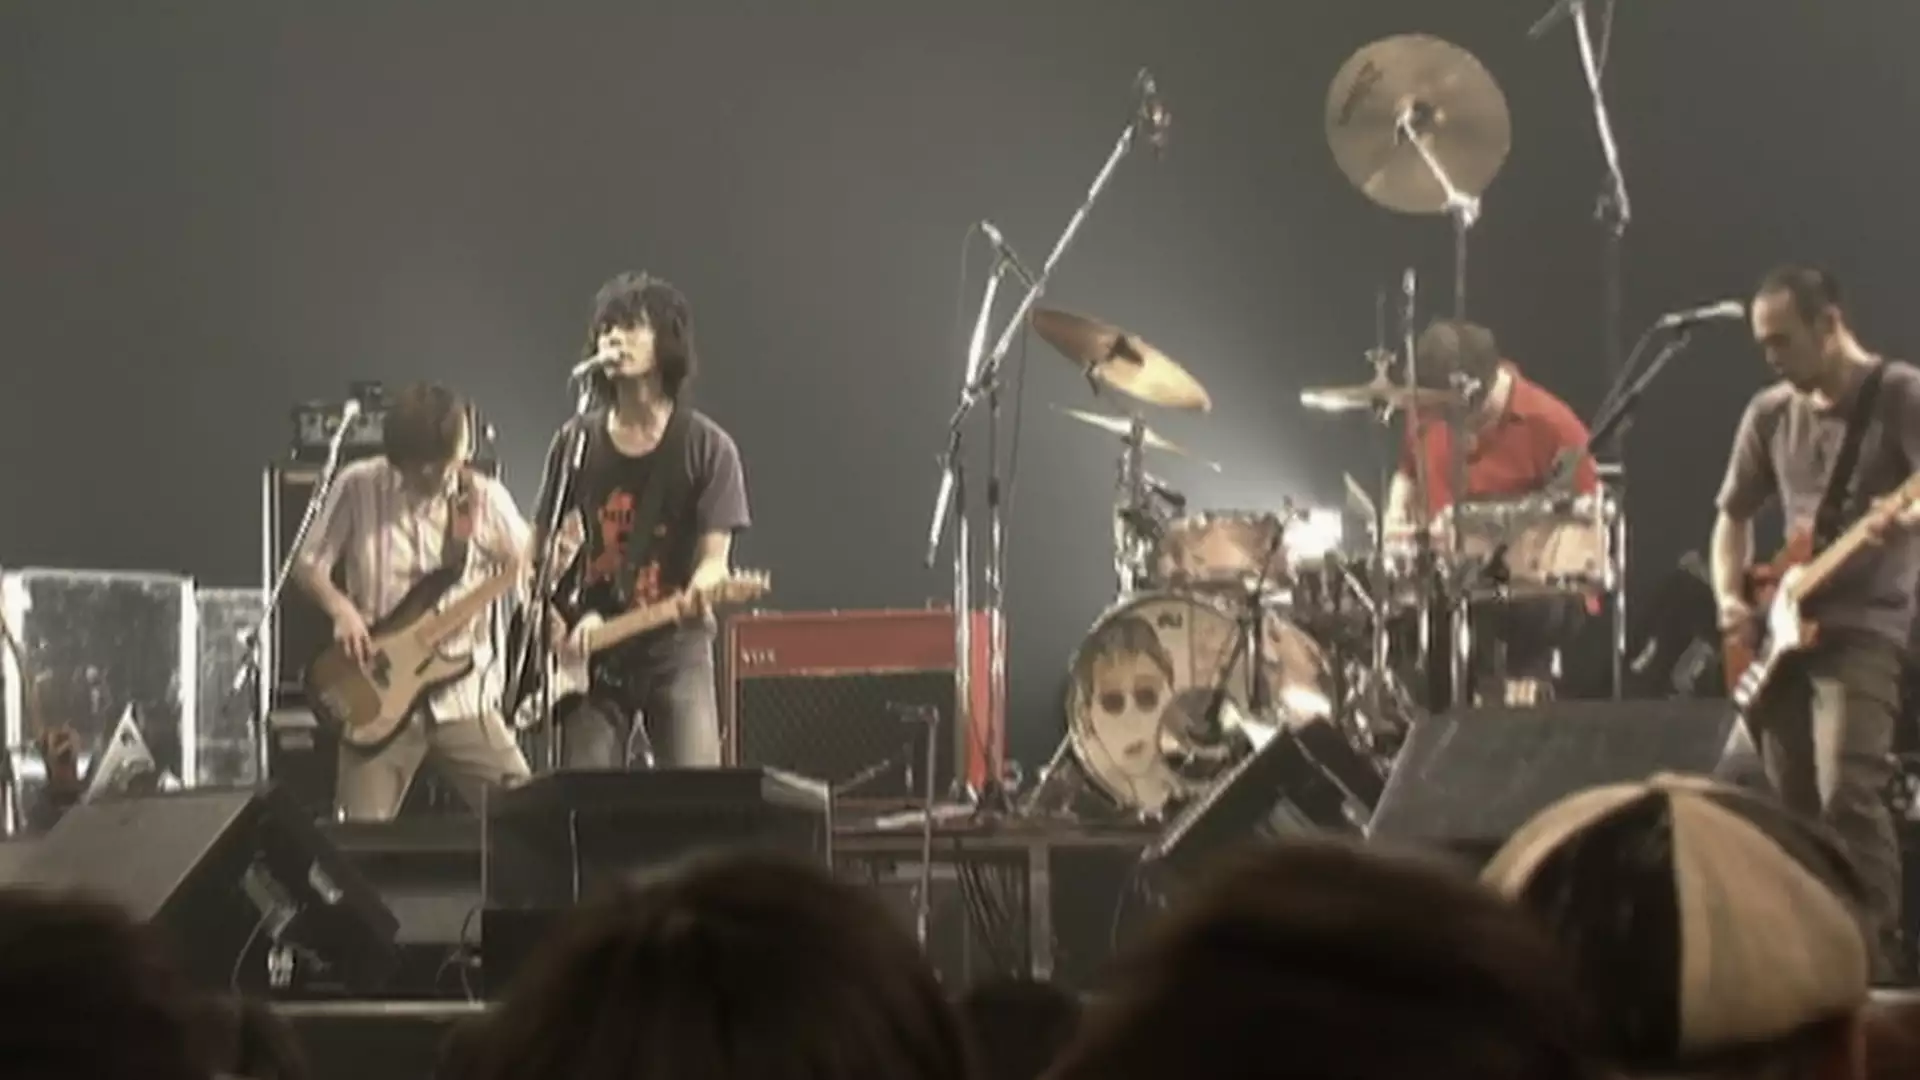 ロックンロール (2004.06.18 LIVE at 日本武道館)